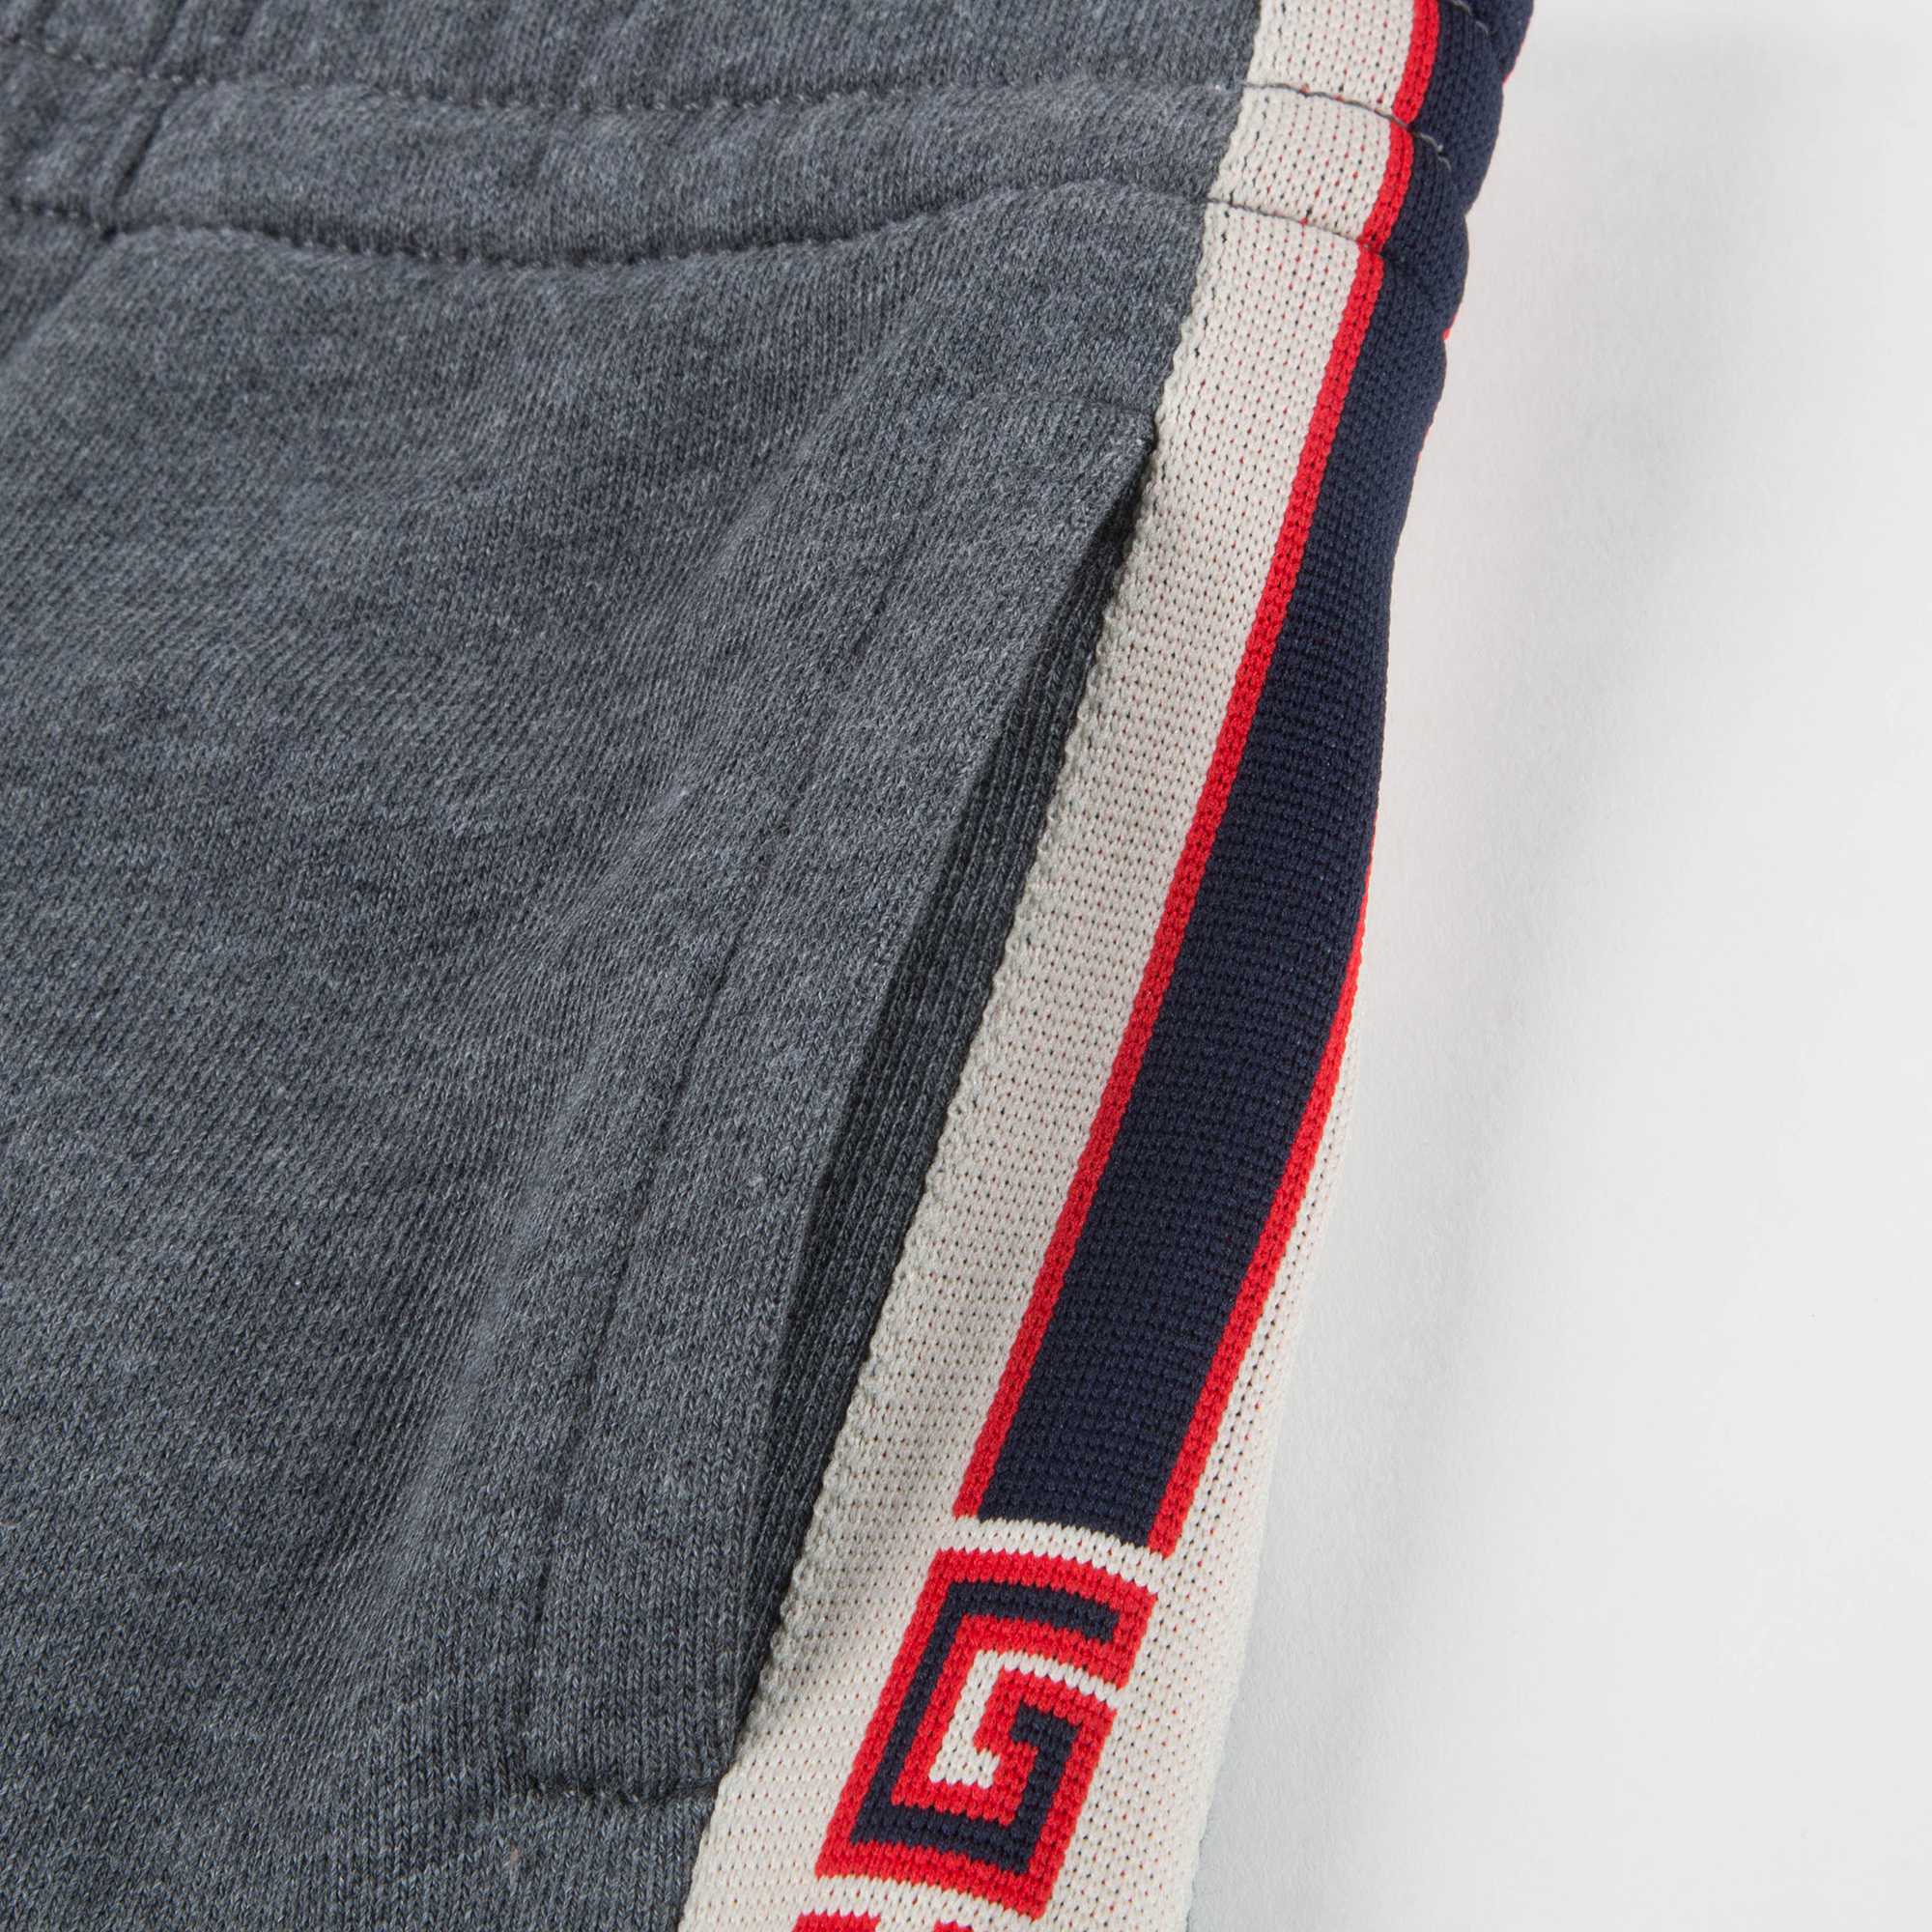 Boys Grey Logo Cotton Shorts